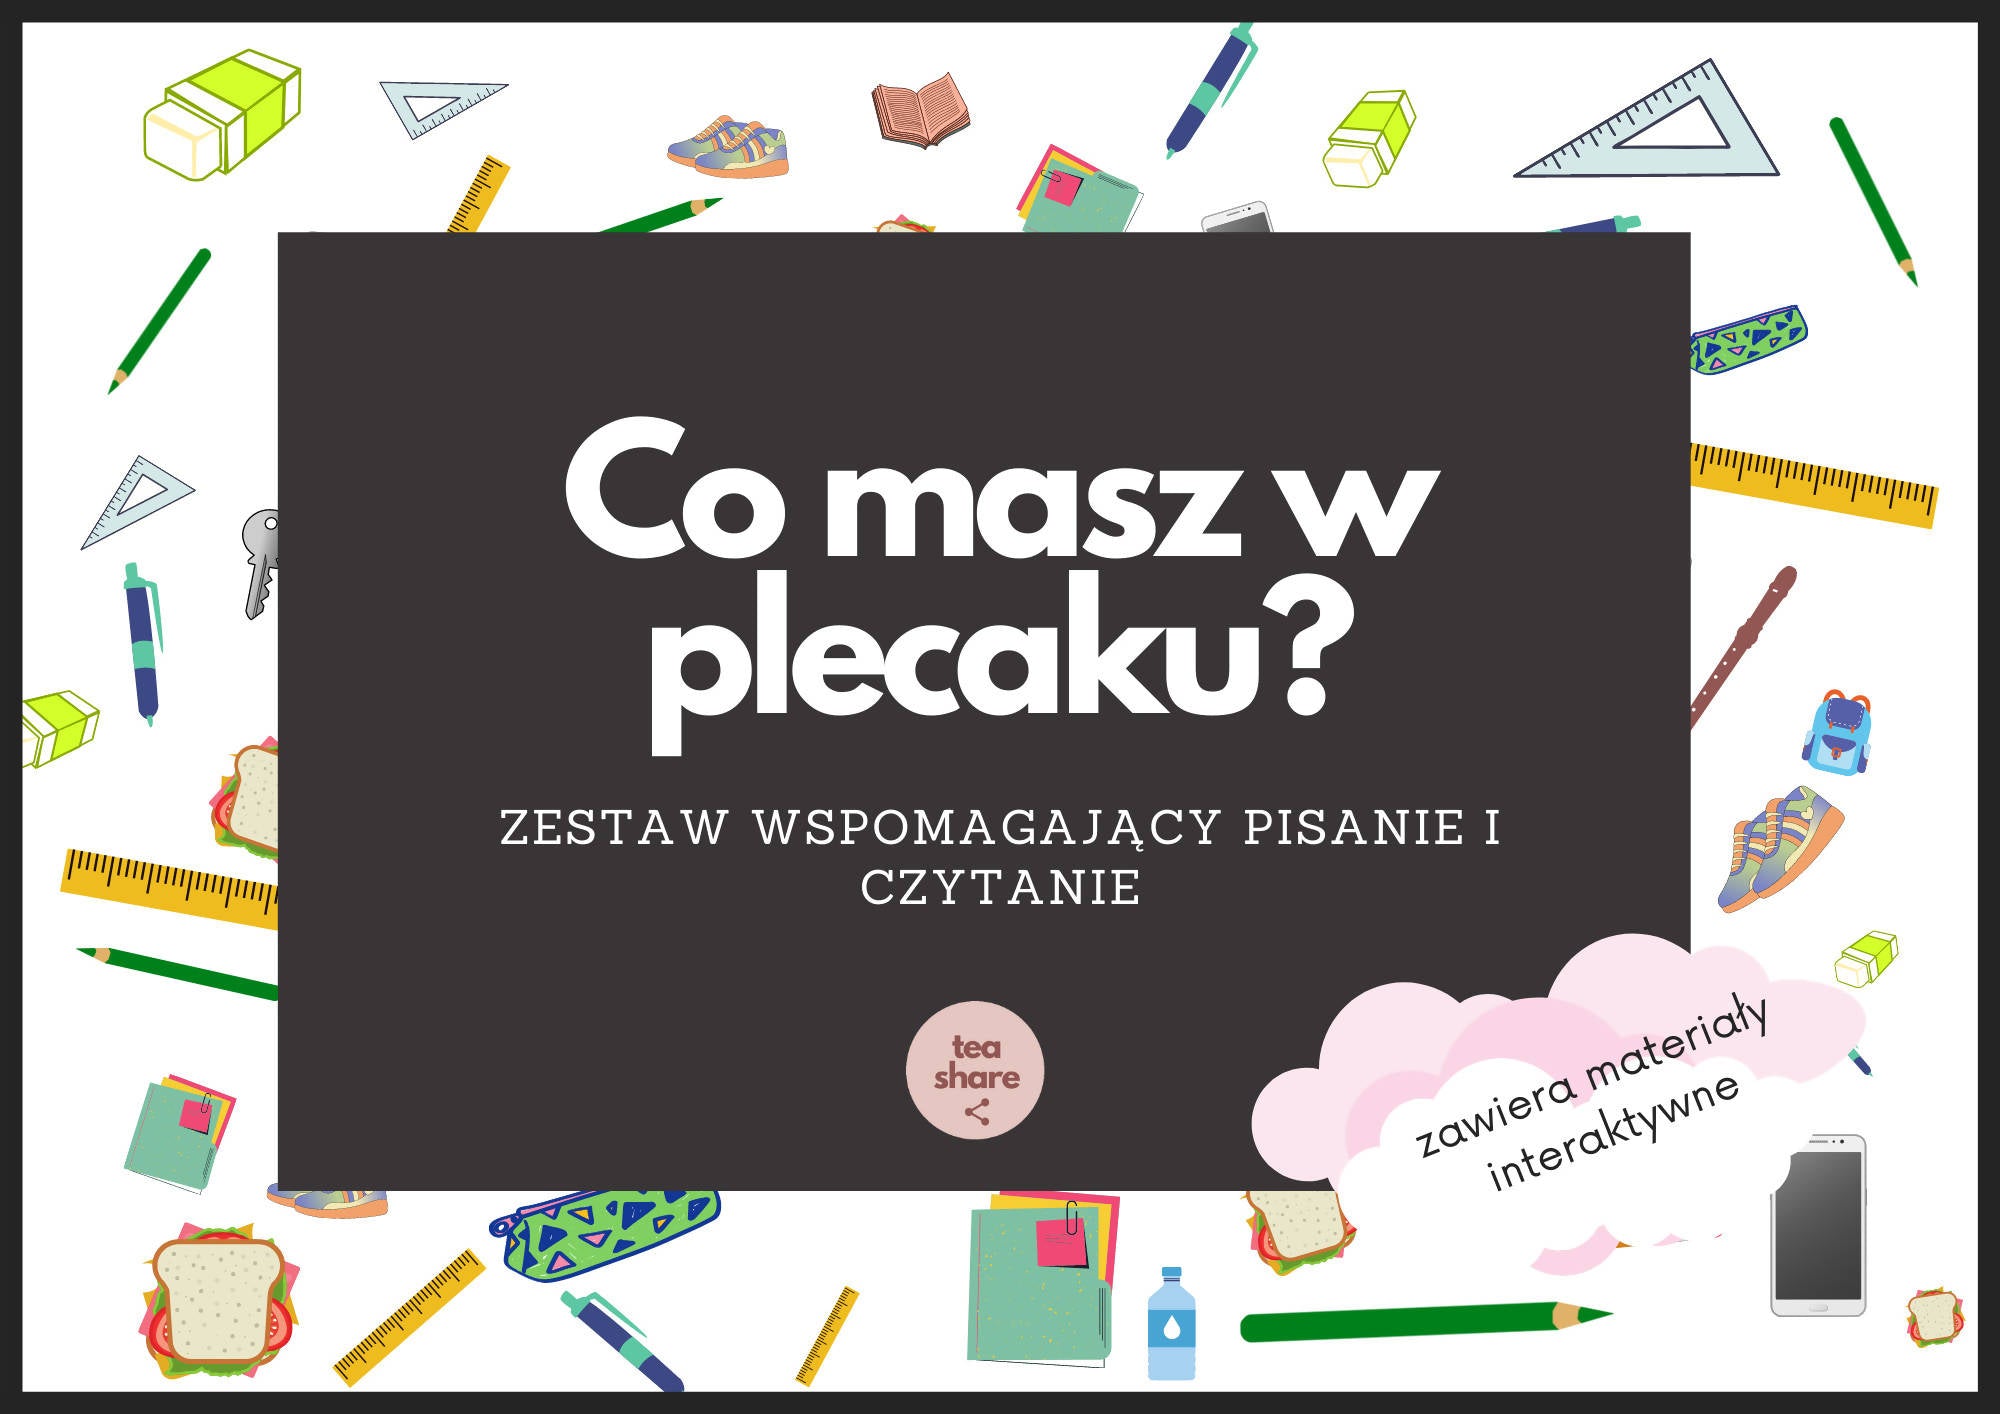 Co masz w plecaku? Ćwiczymy pisanie i czytanie po polsku! (polski dla obcokrajowców)